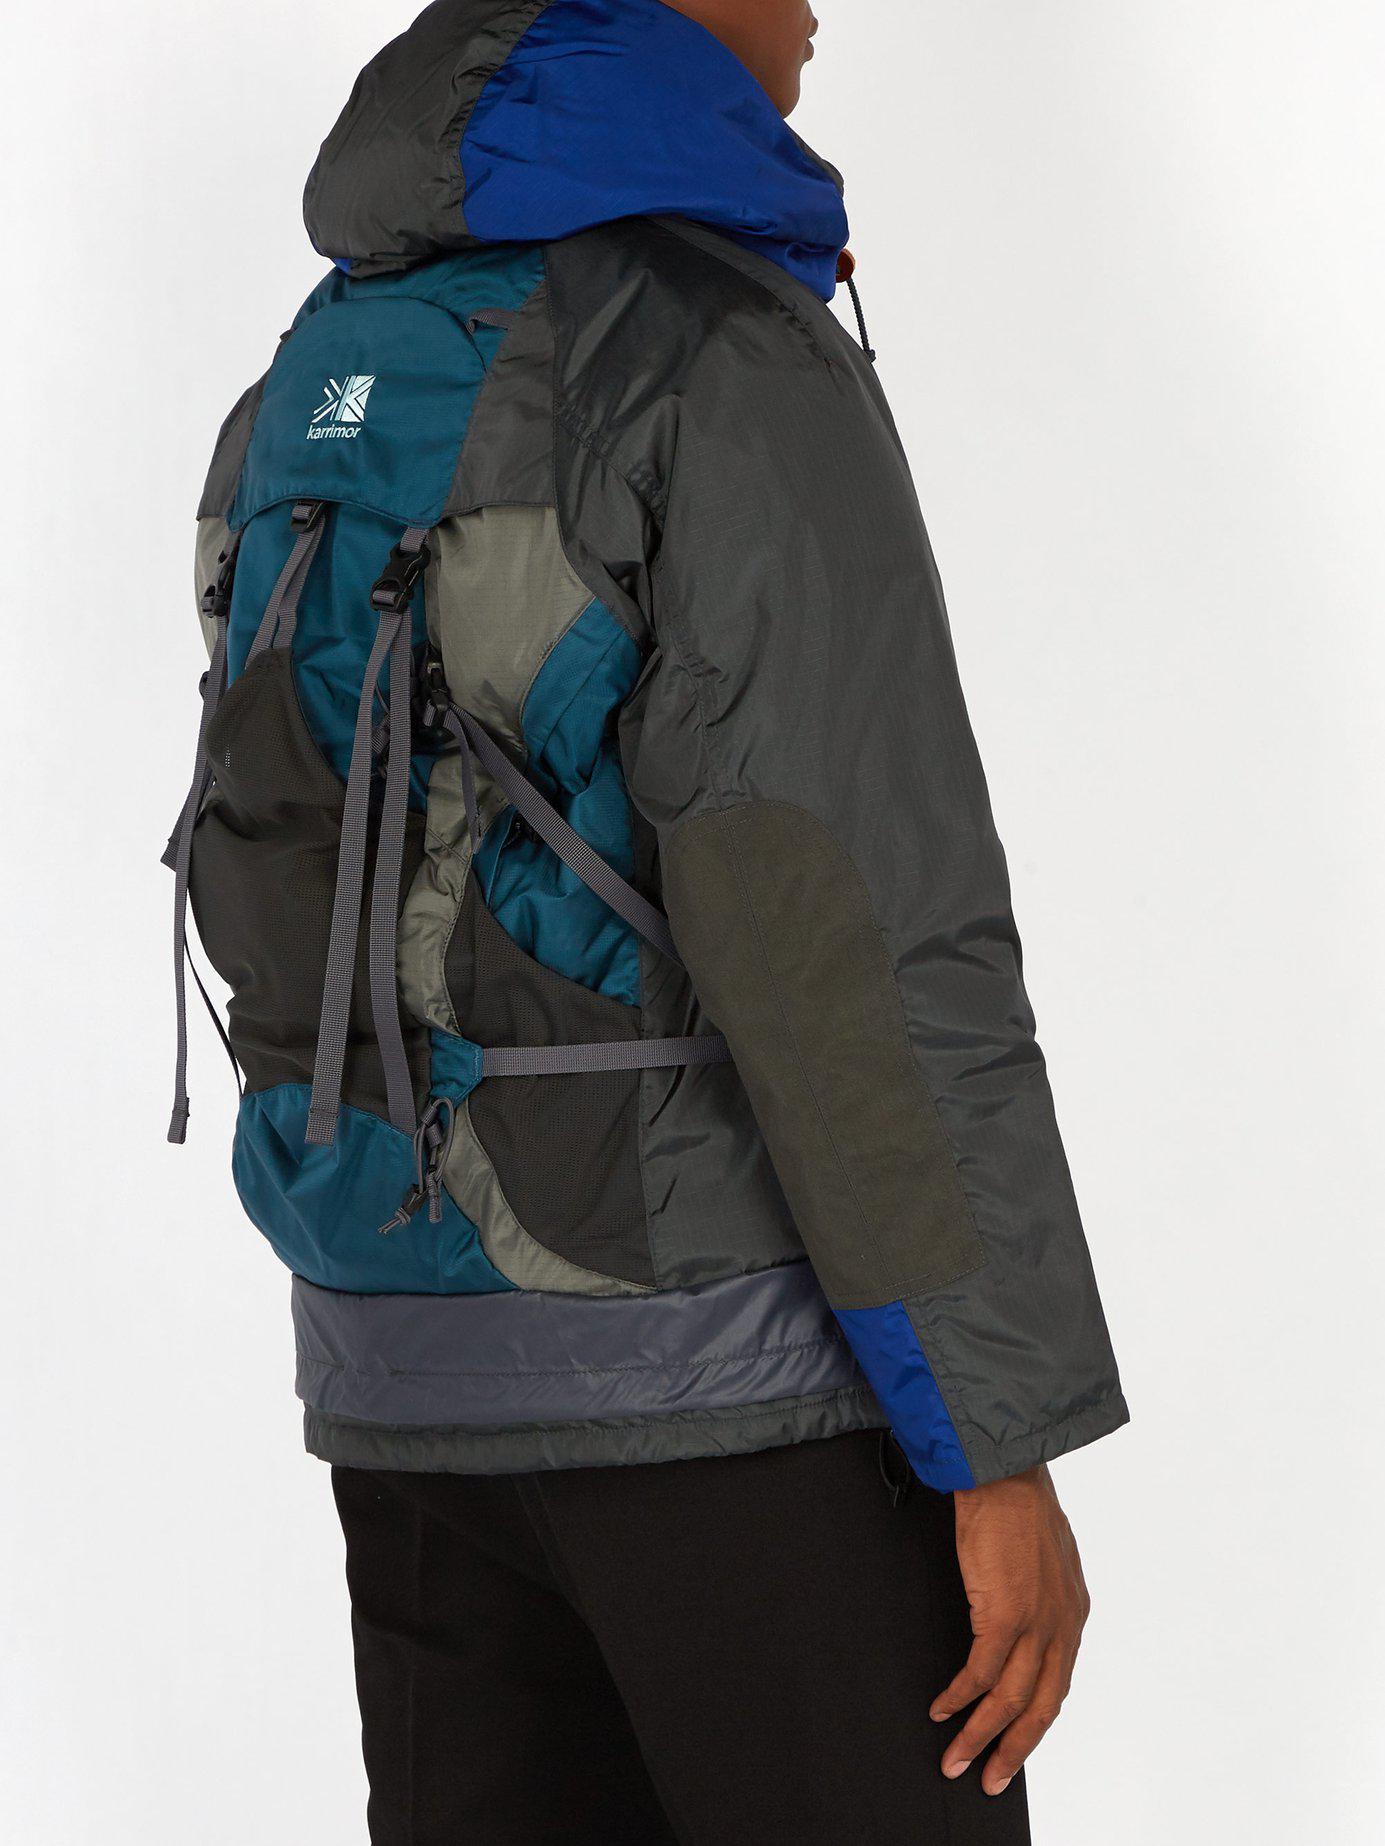 Junya Watanabe X Karrimor Backpack Nylon Jacket in Gray for Men - Lyst